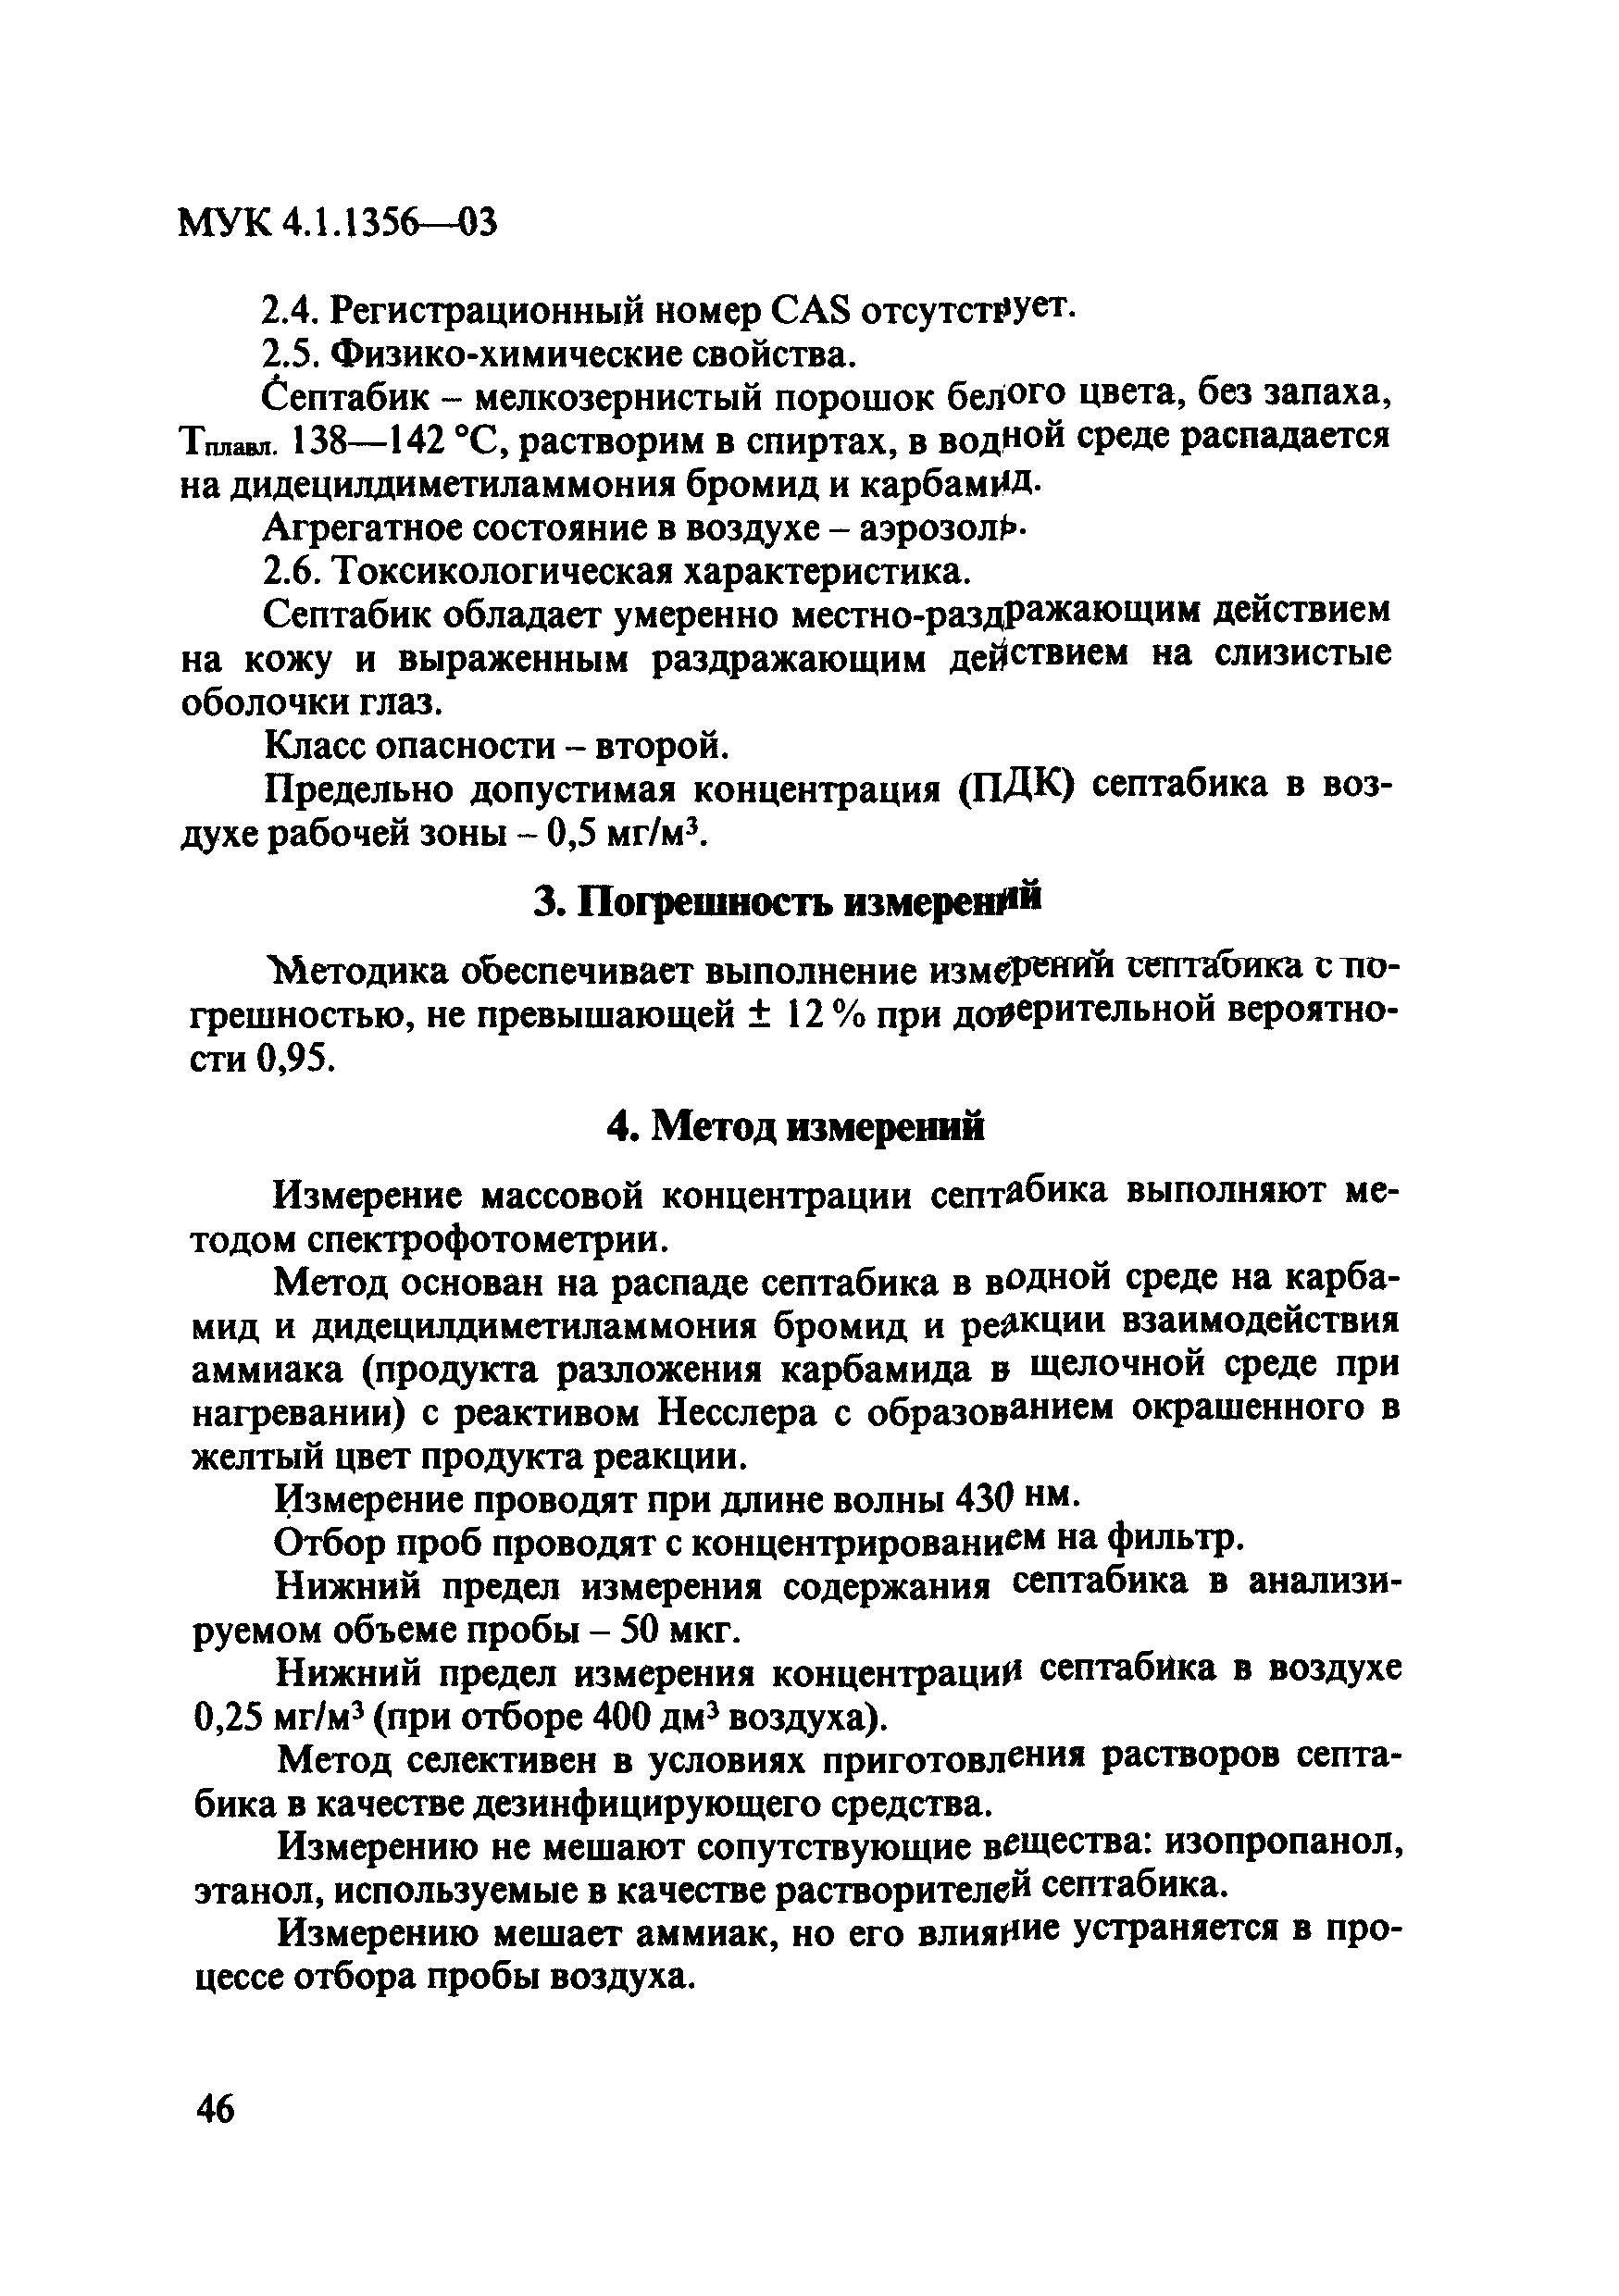 МУК 4.1.1356-03